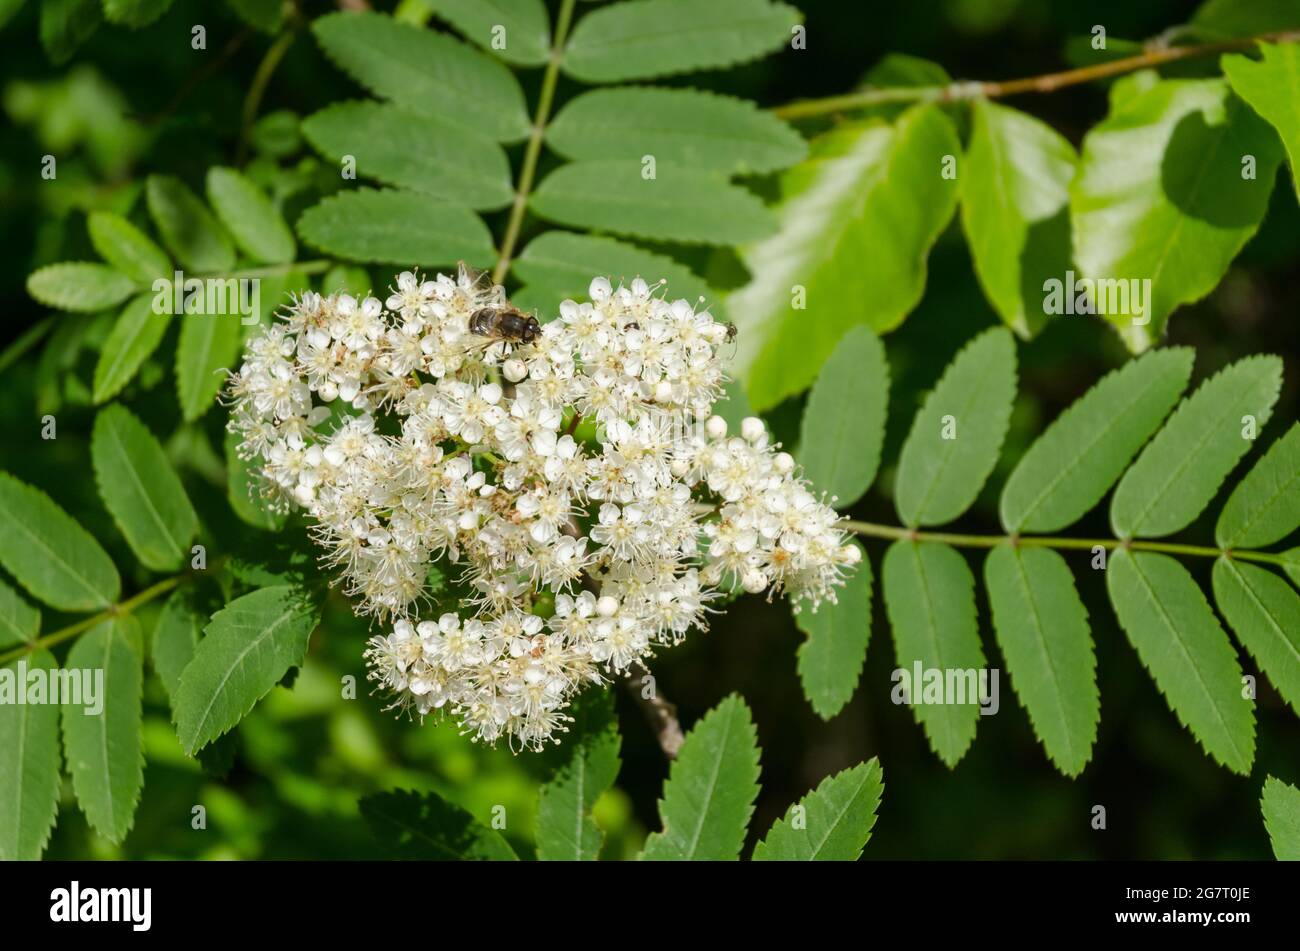 Sorbus aucuparia, known as rowan or mountain-ash shrub with white ...